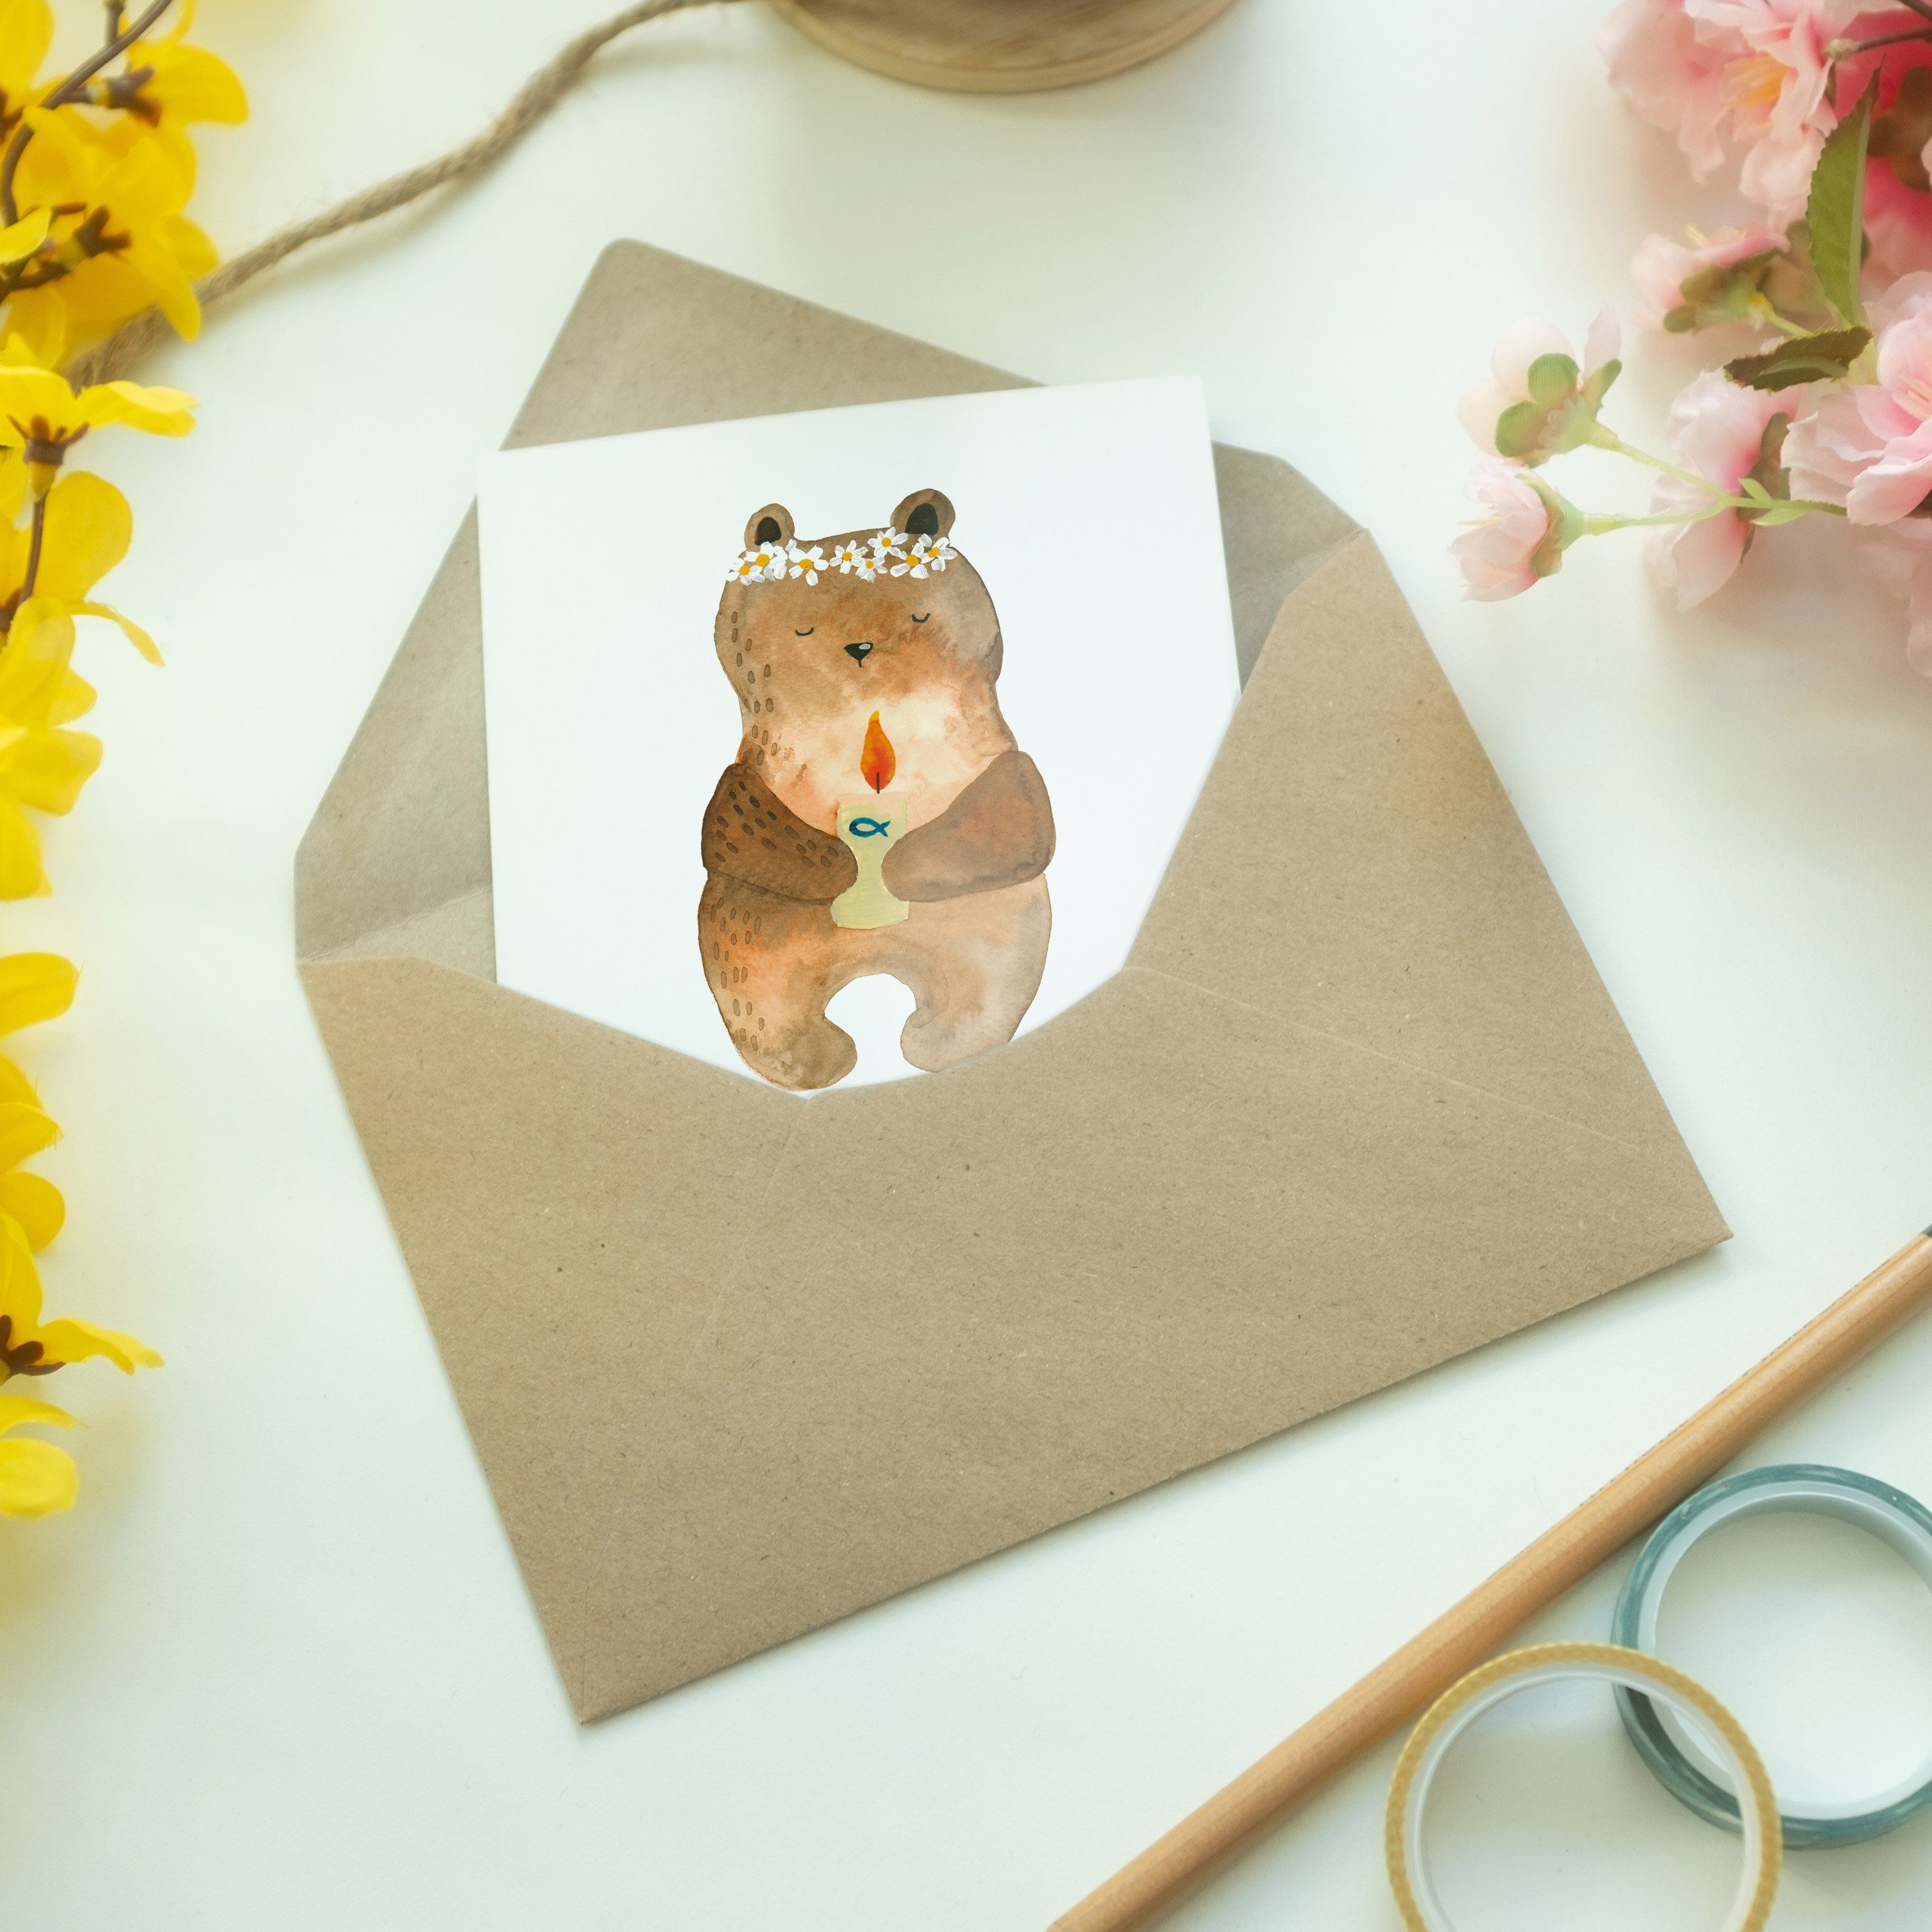 Kommunion-Bär & Panda Grußkarte Mr. - Teddybär Mrs. Weiß Hochzeitskarte, - Taufkerze, Geschenk,